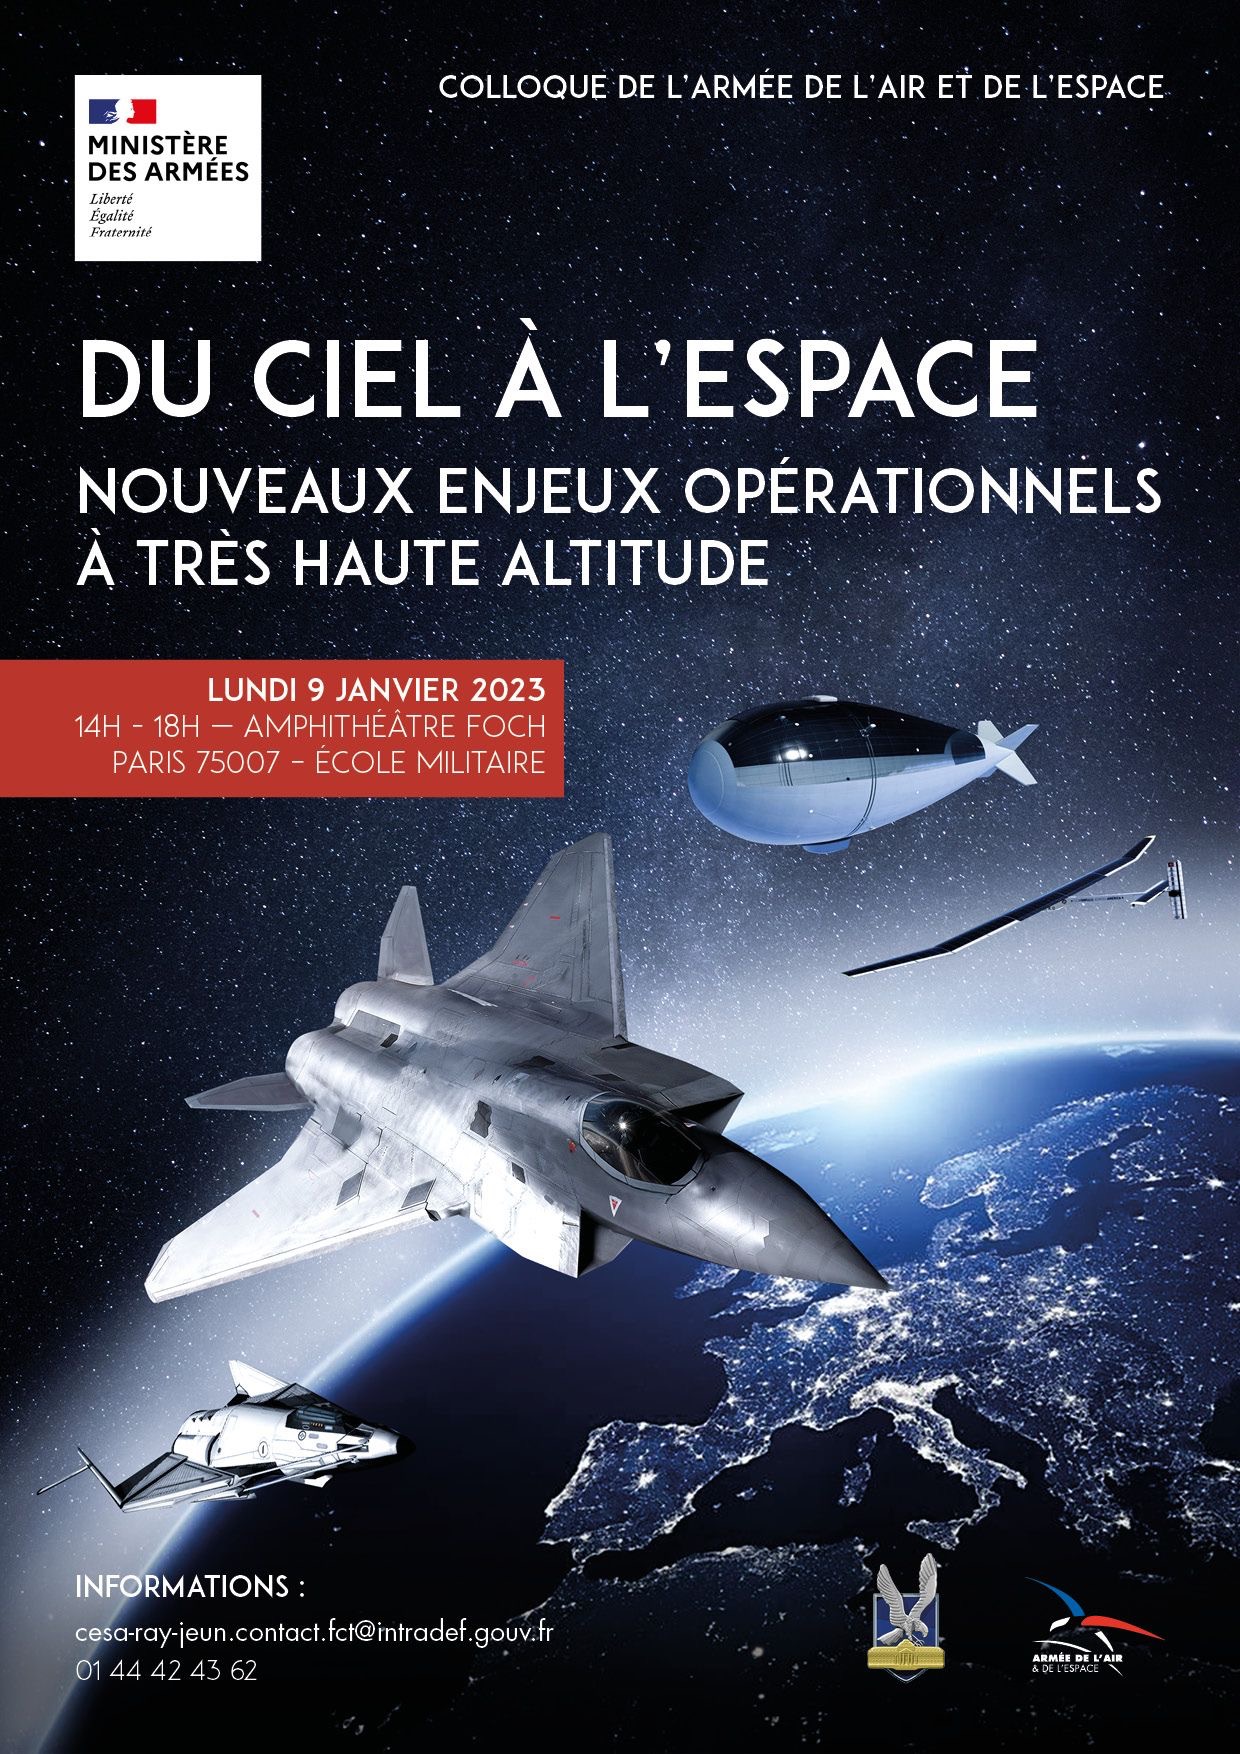 SCAF : Airbus et Dassault confirment leur collaboration ! 3e7dfd10